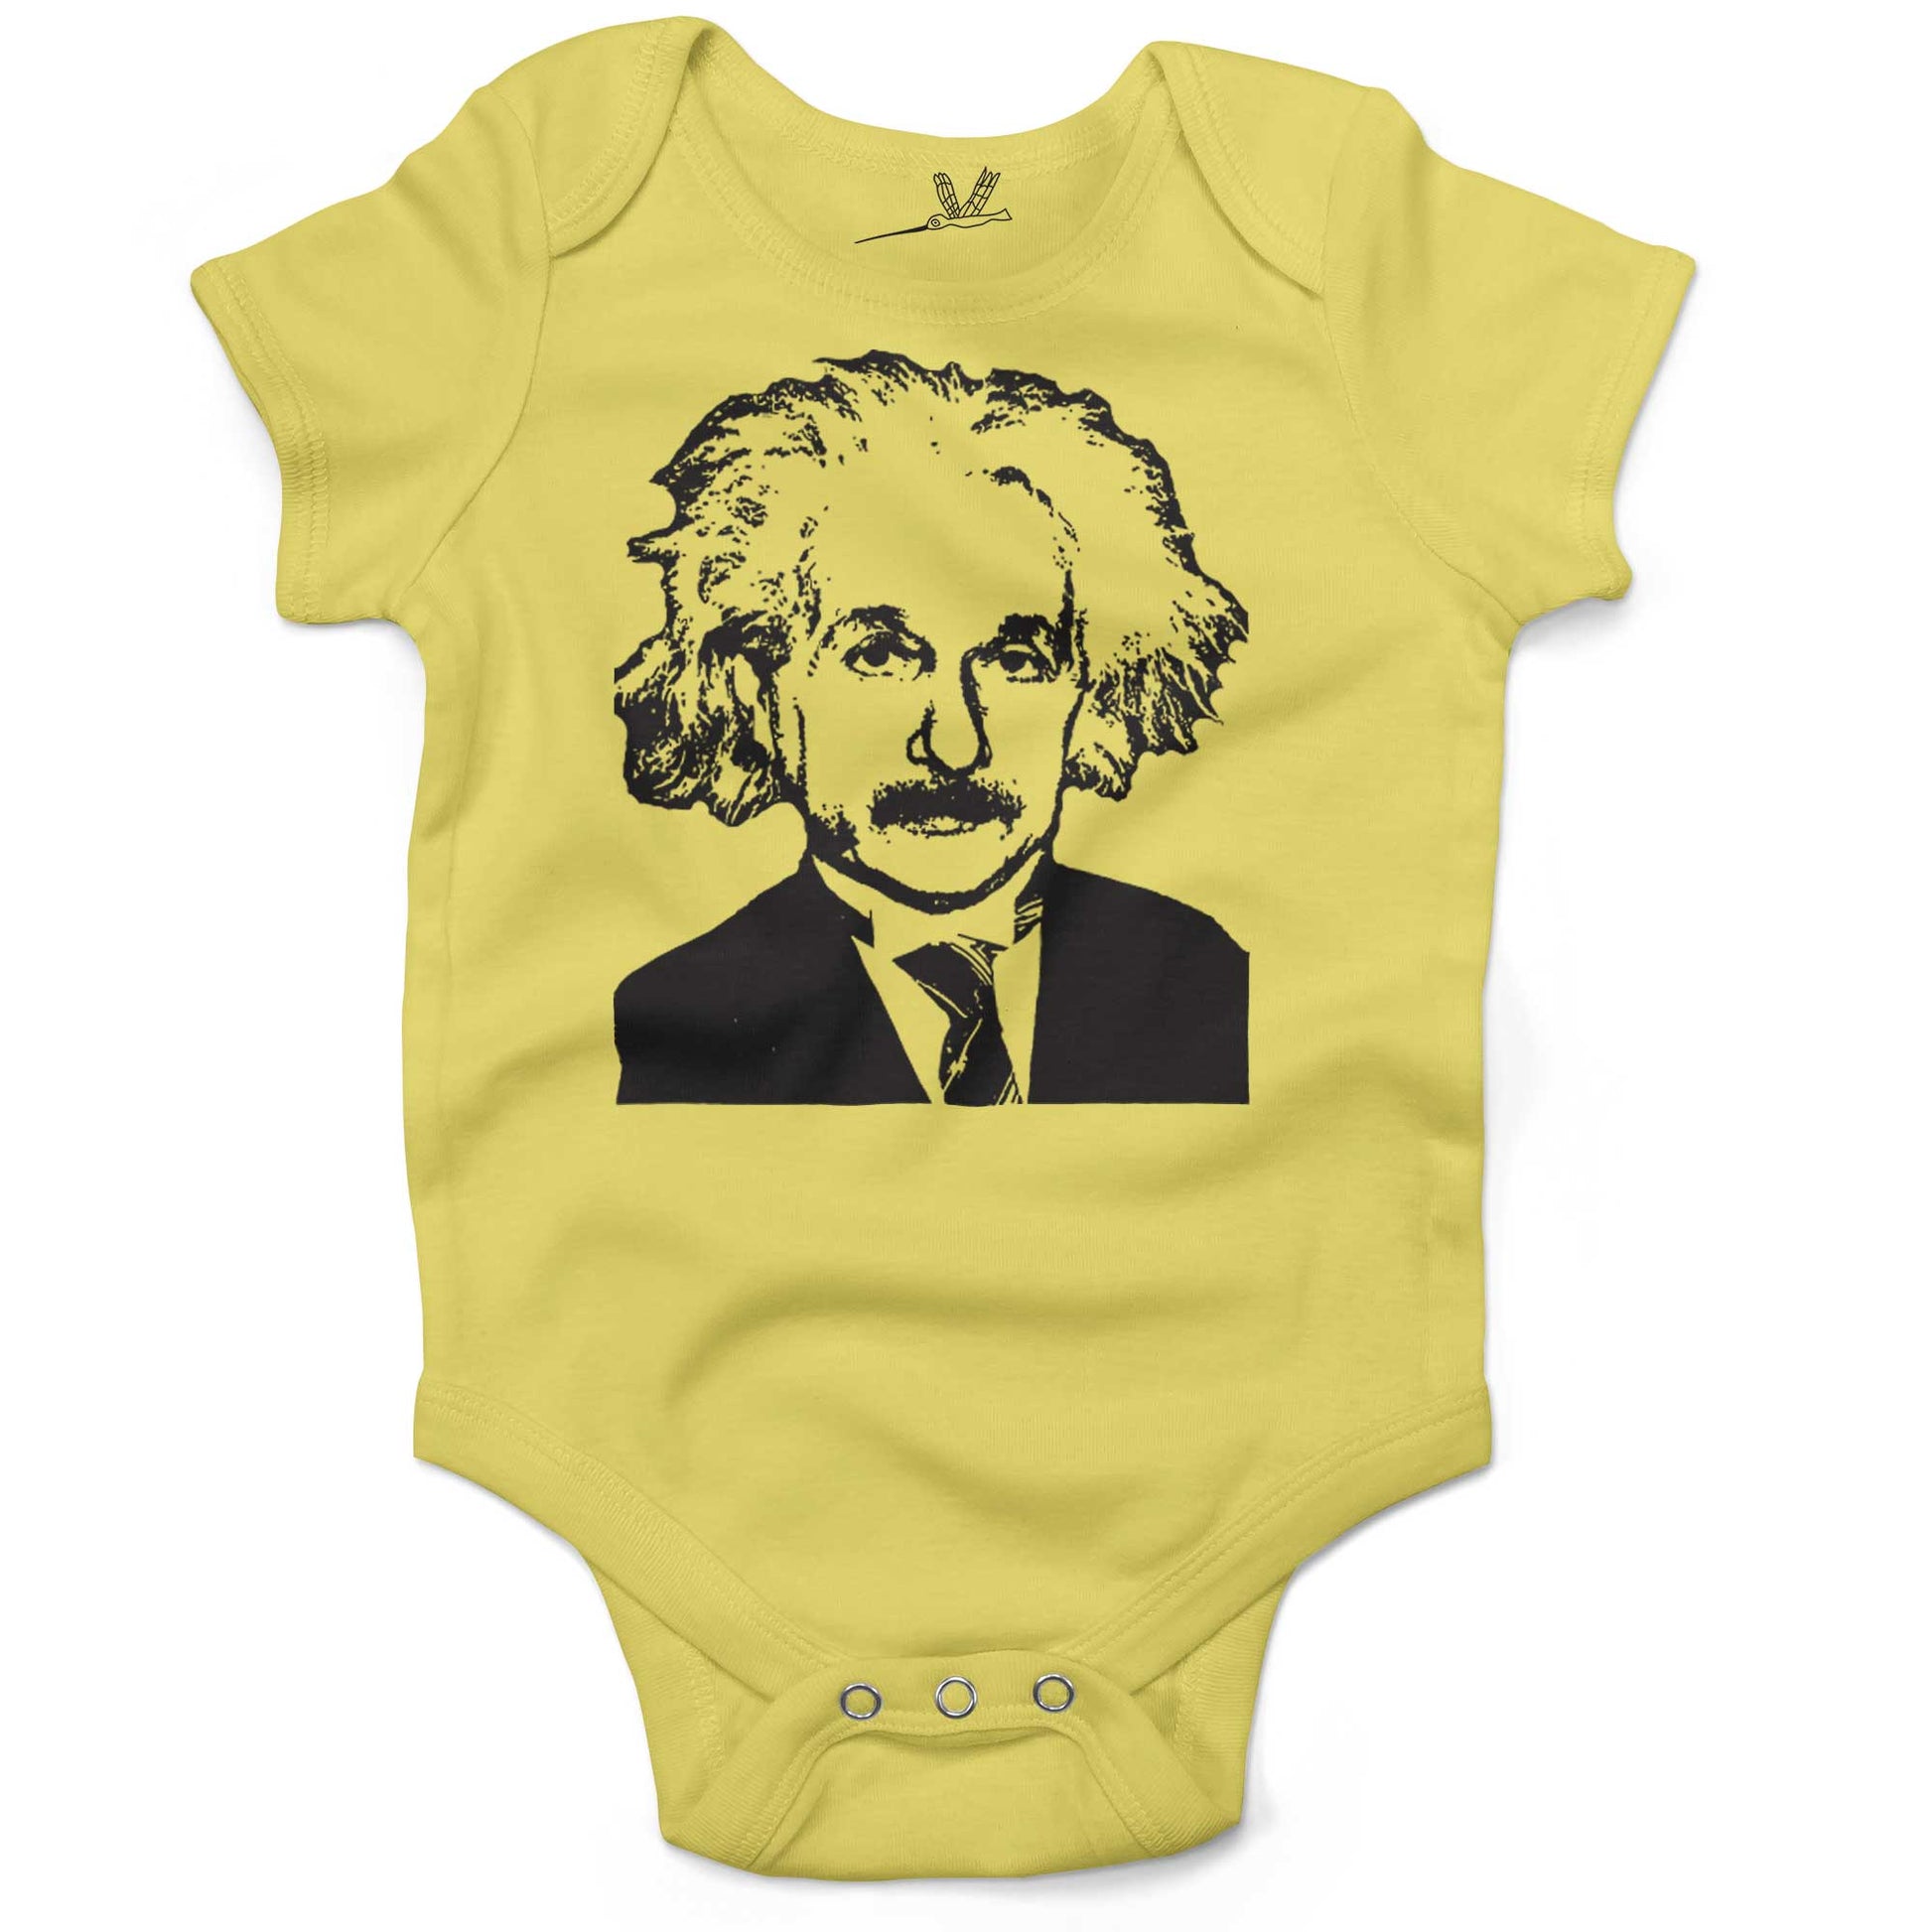 Albert Einstein Infant Bodysuit or Raglan Baby Tee-Yellow-3-6 months